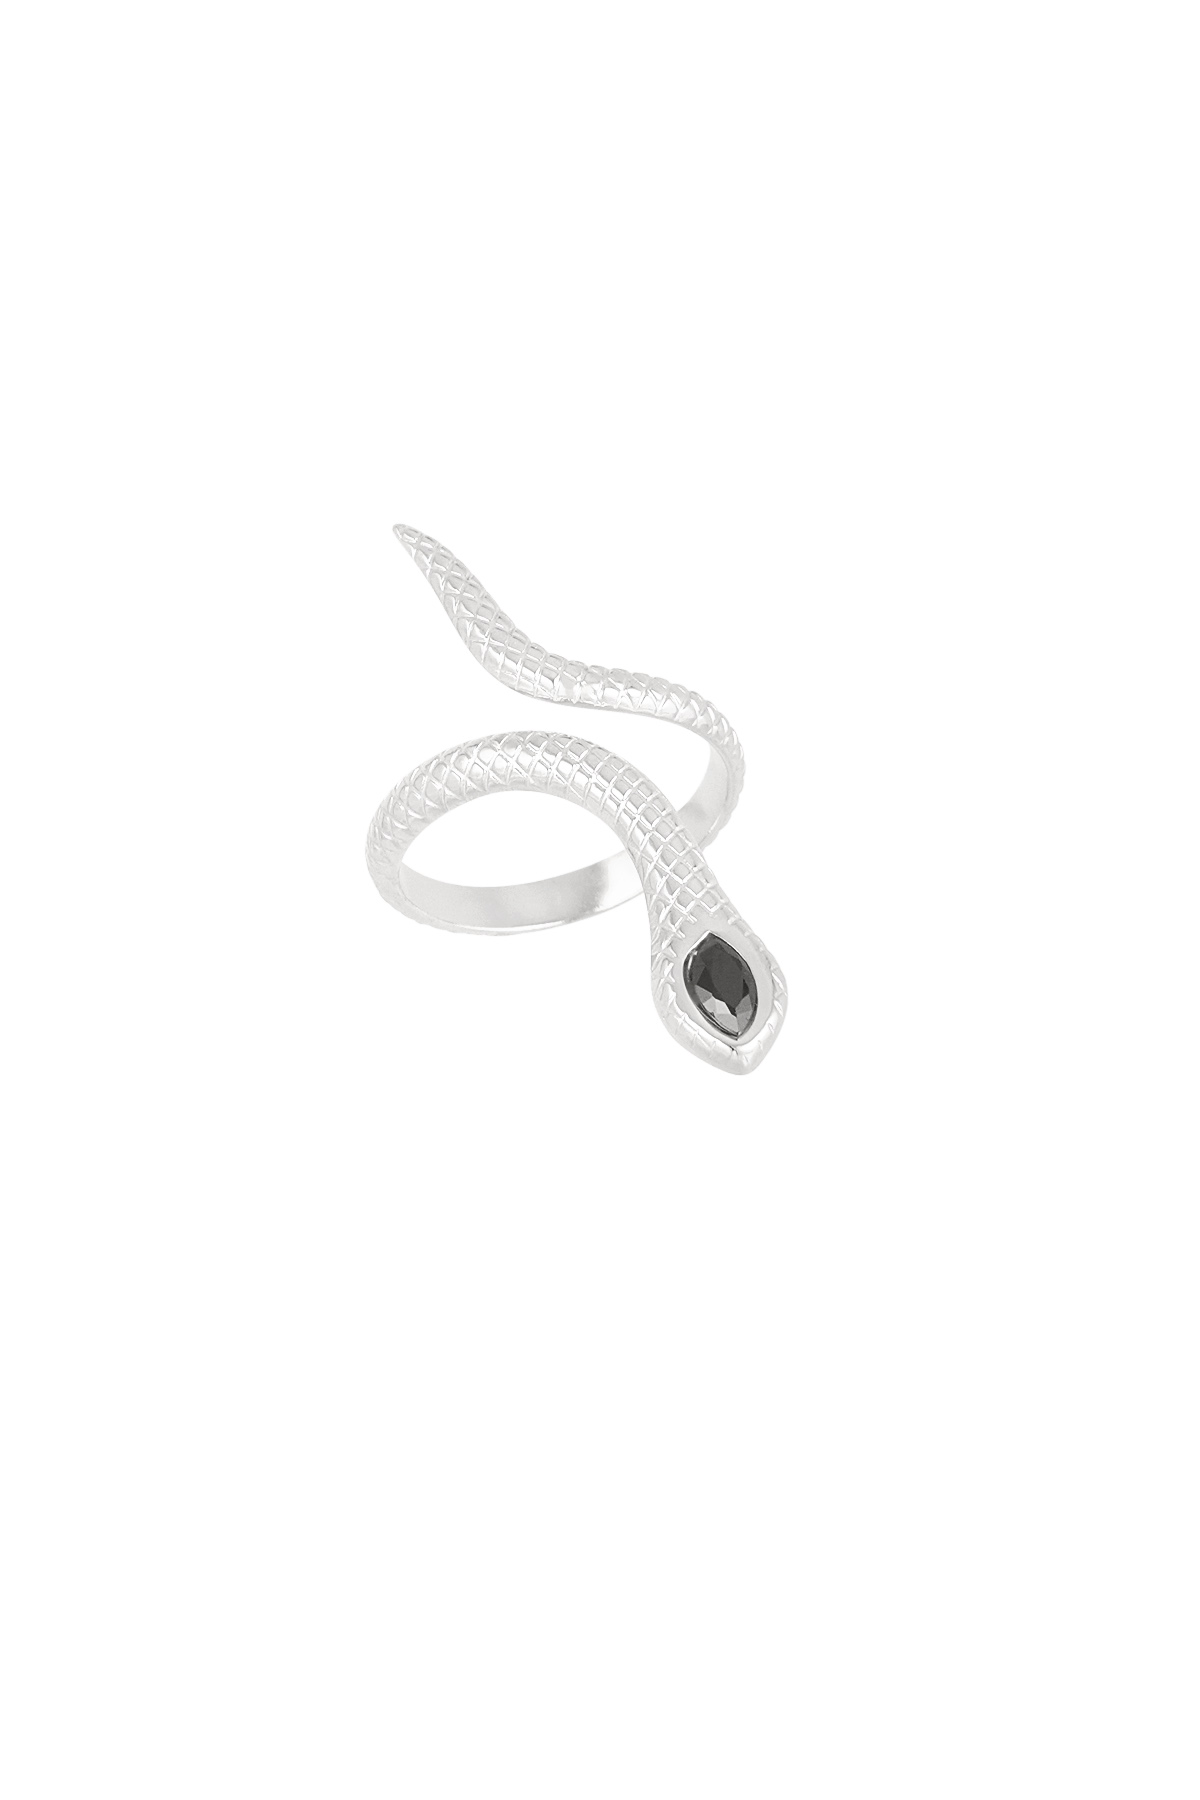 Zwarte slang ring - zilver  h5 Afbeelding5